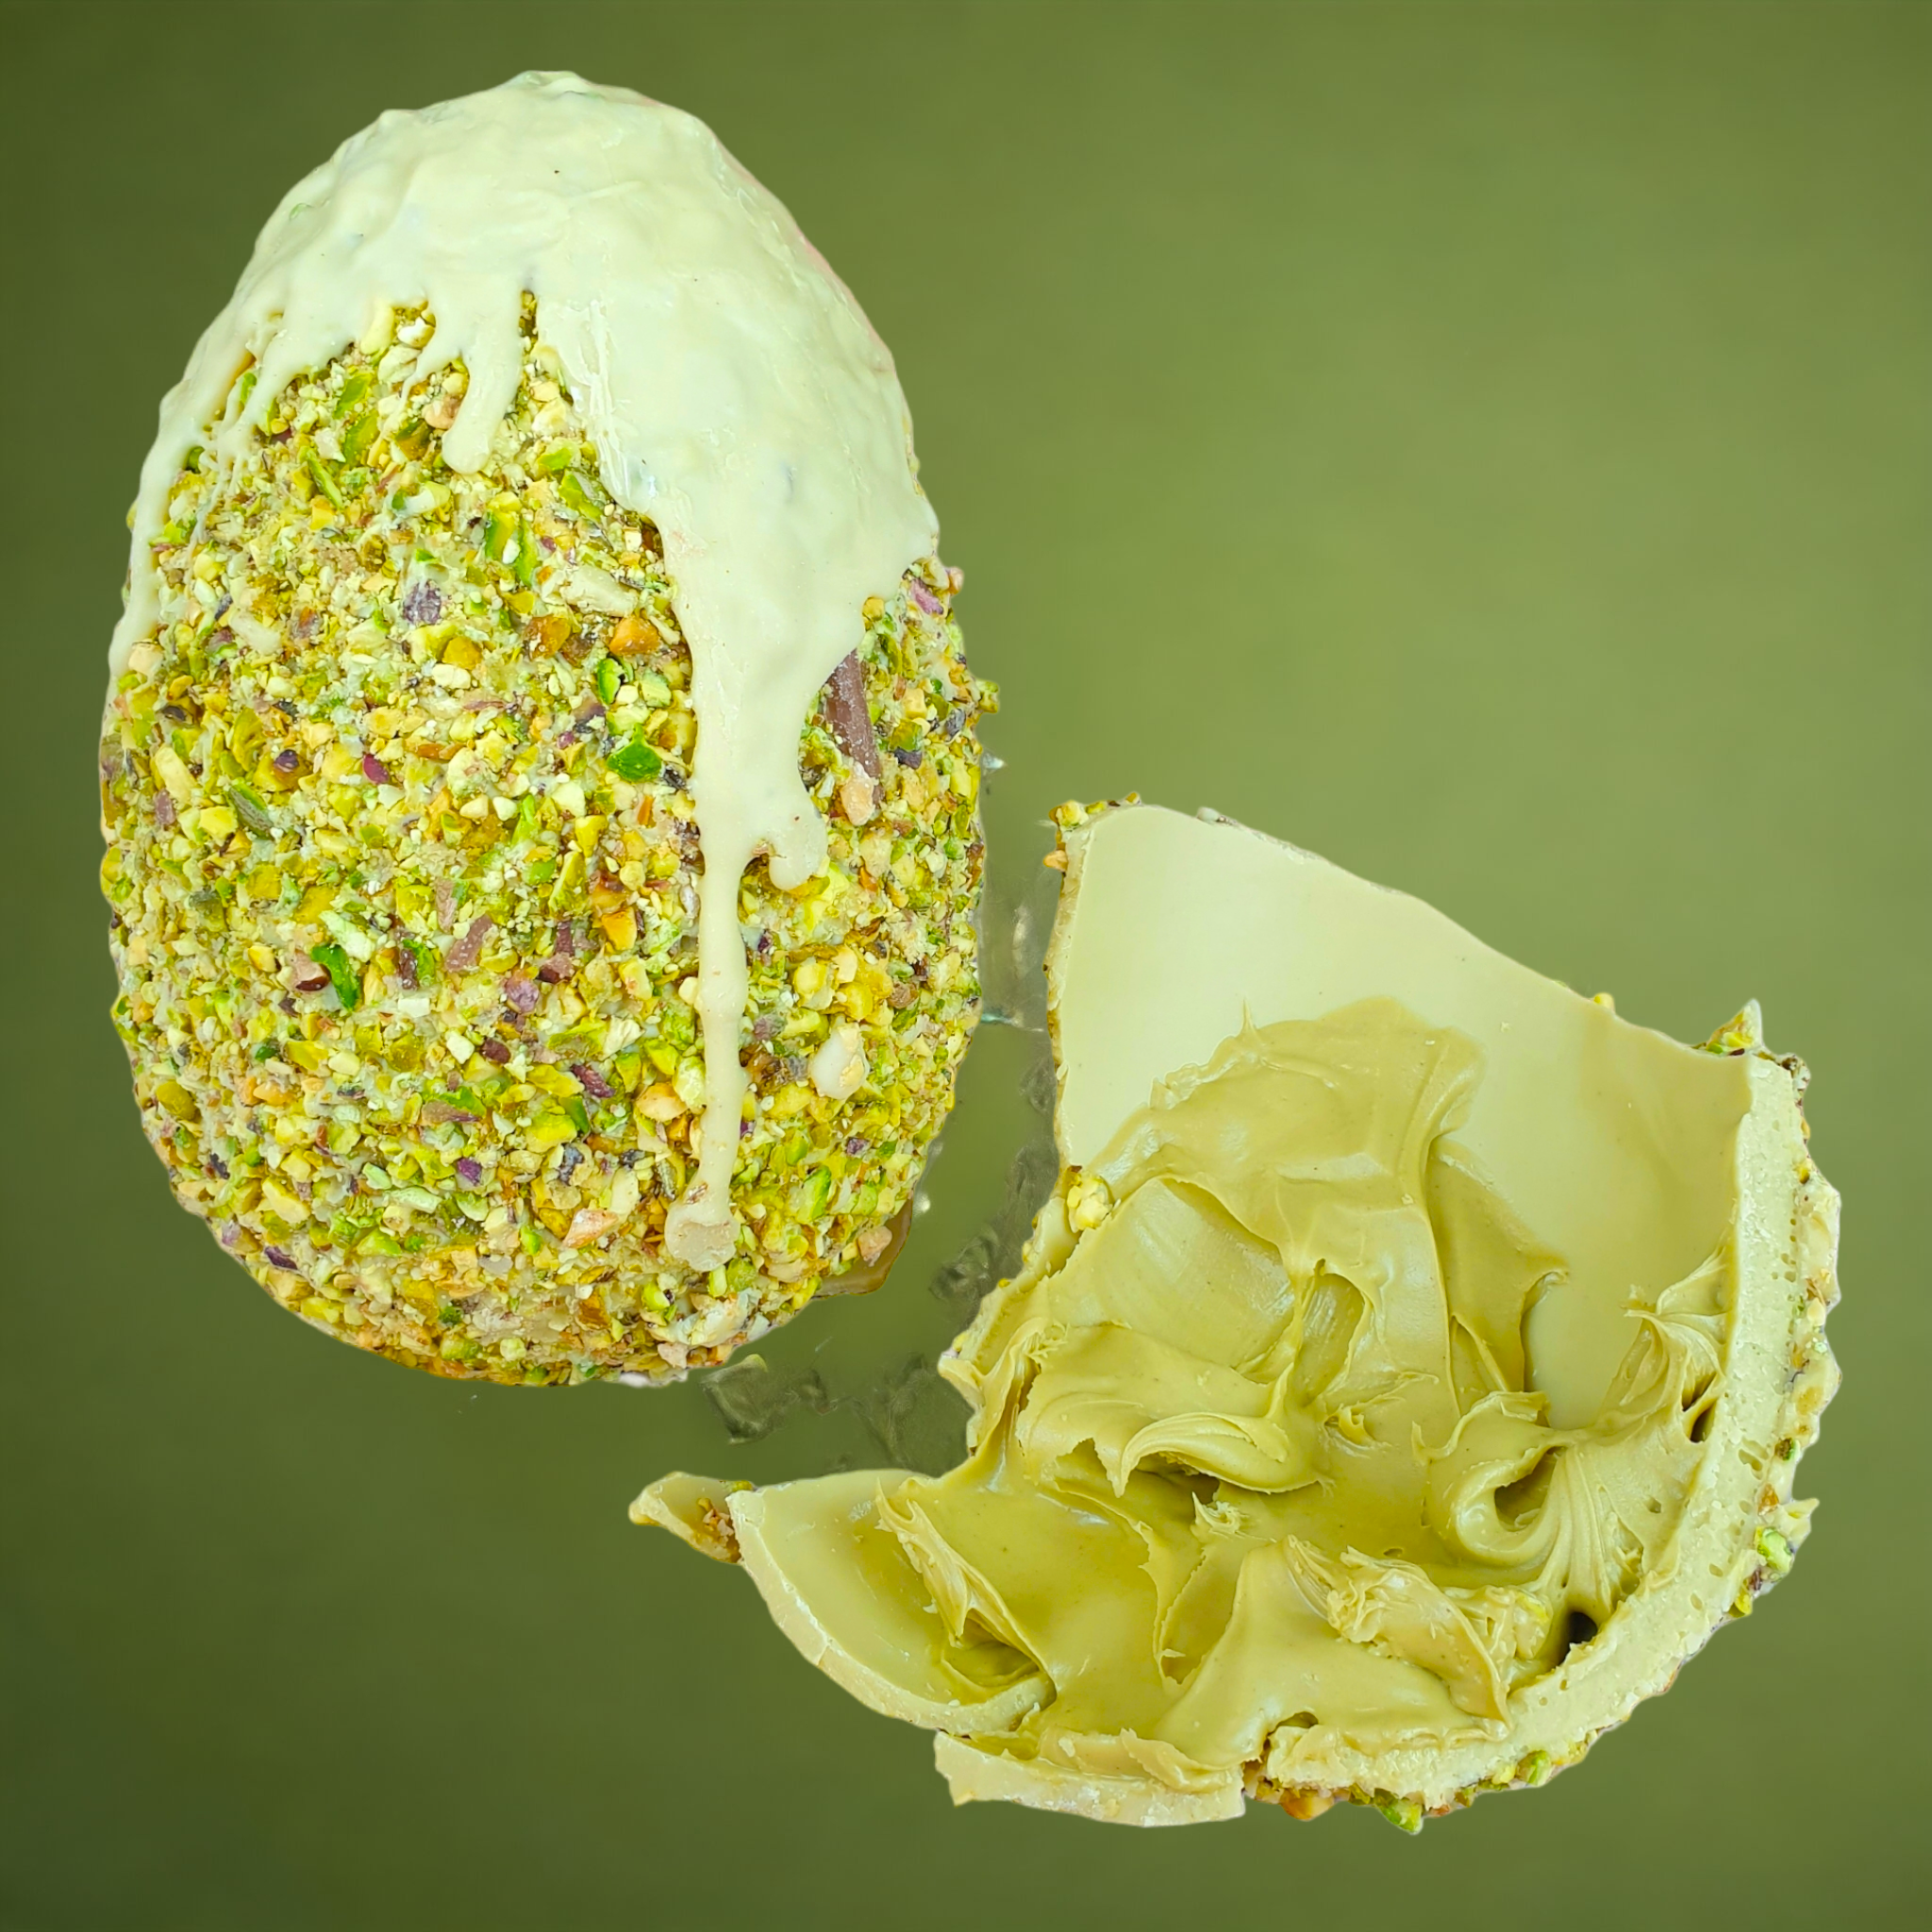 Uovo Golosone al Pistacchio ripieno di Crema al Pistacchio, artigianale 350g + 100g crema